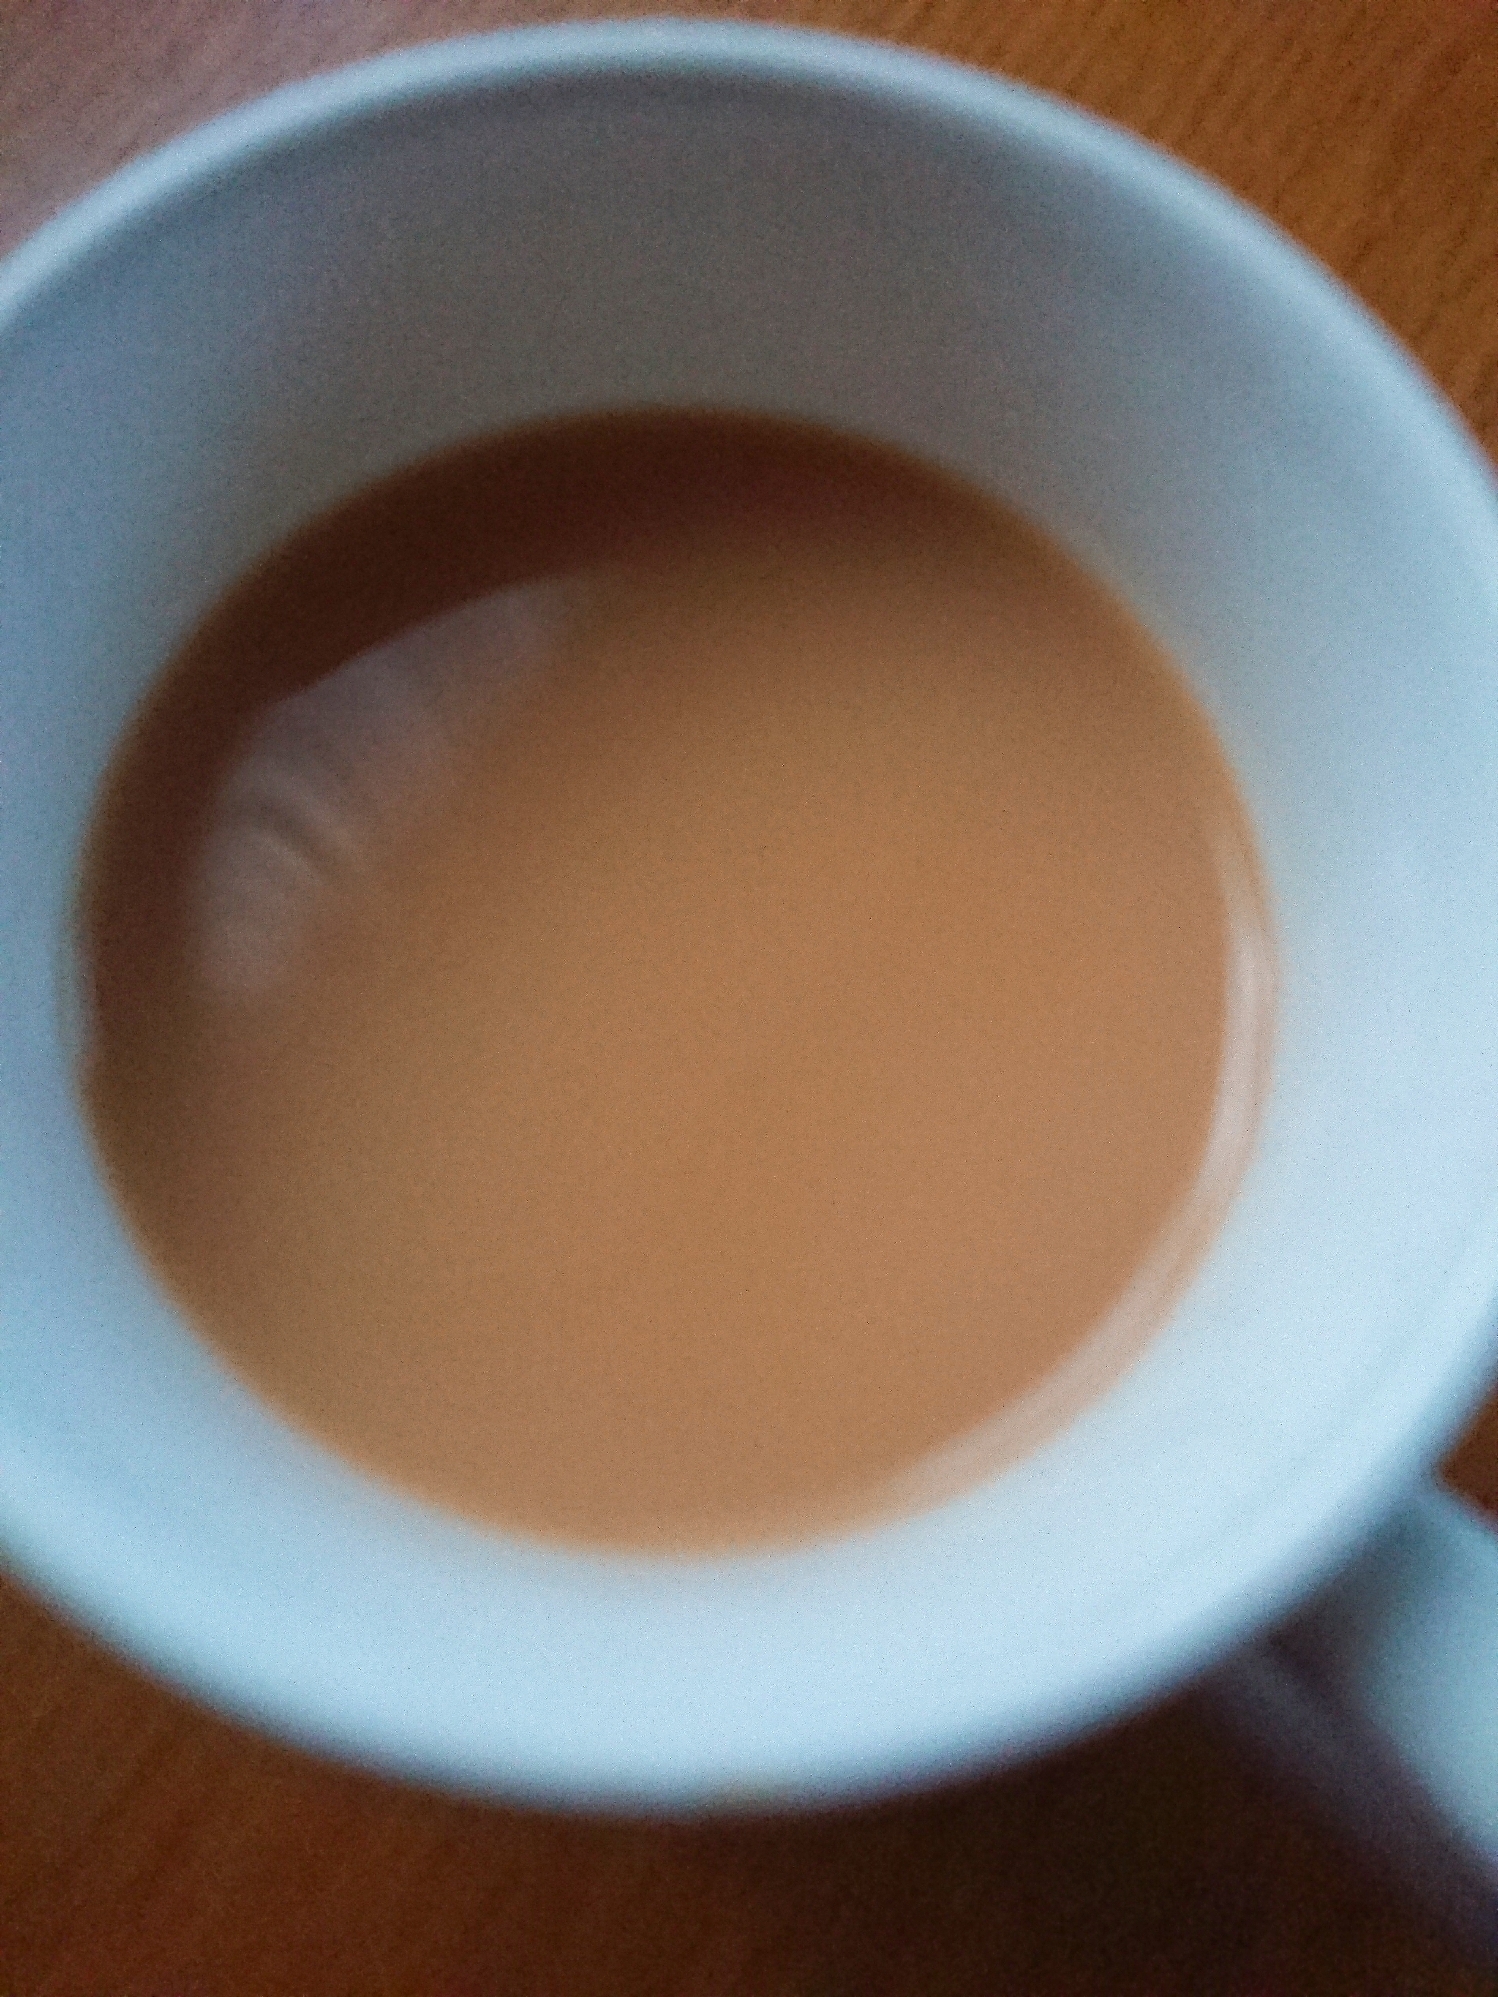 Wミルクの紅茶珈琲